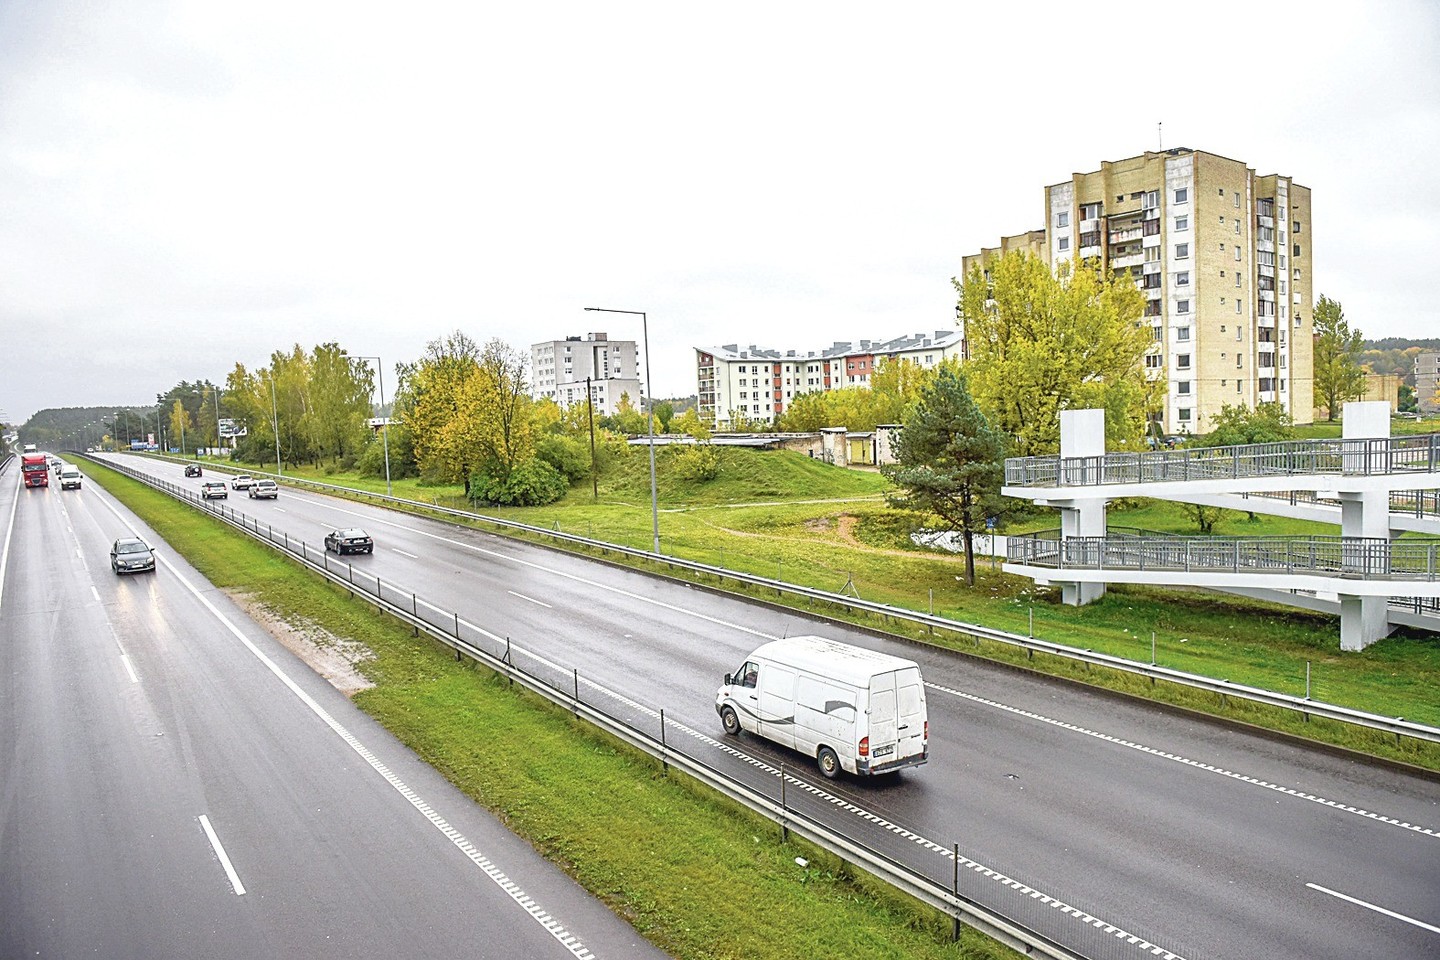 Vilniaus gatvės namai triukšmą slopinančios sienos greičiausiai nebesulauks – tam neskirta pinigų.<br>D.Umbraso nuotr.